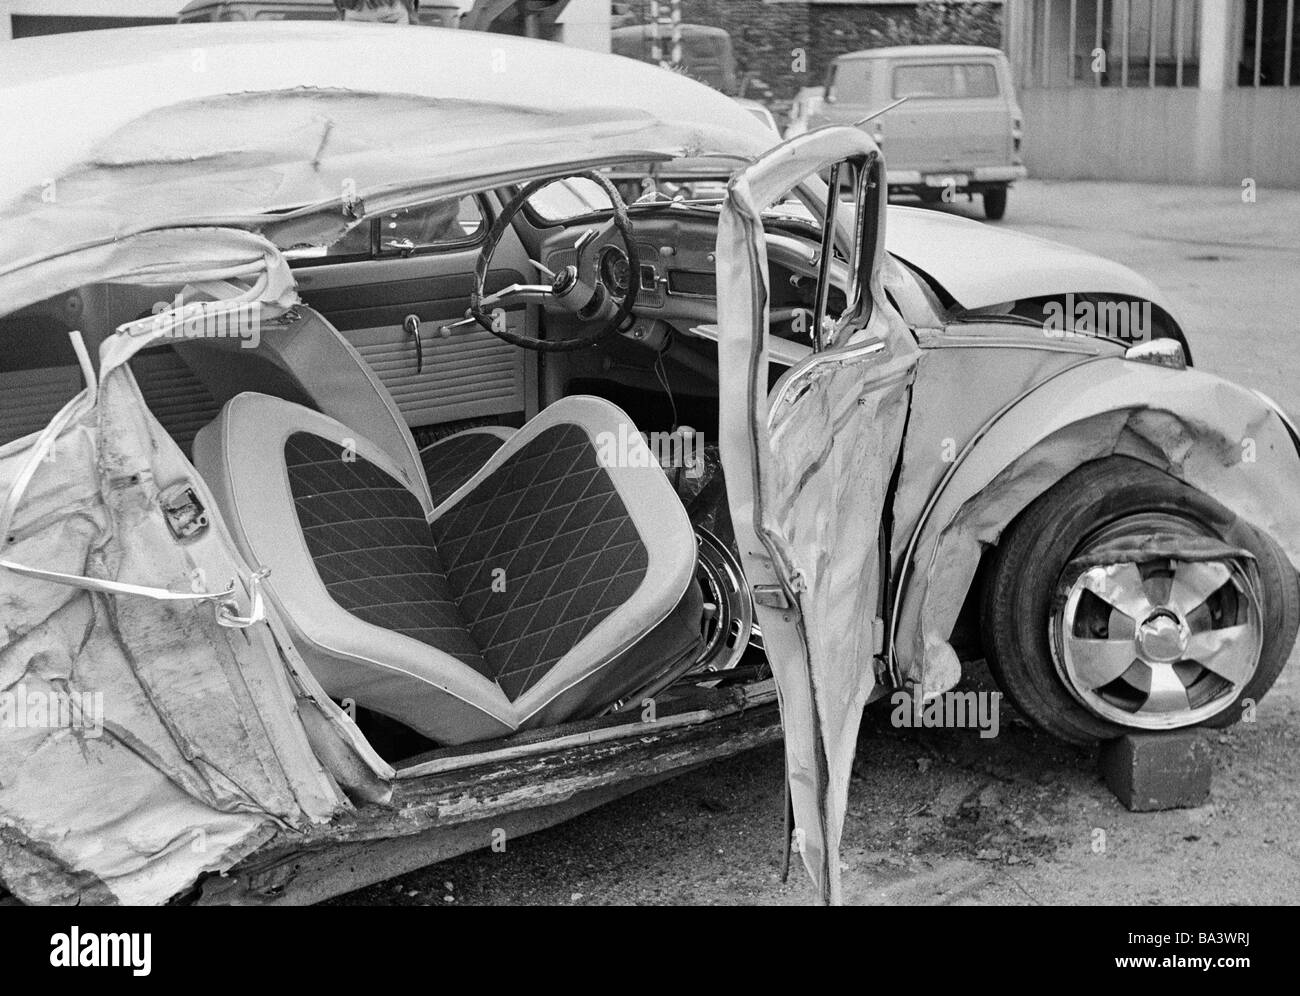 70er Jahre, schwarz / weiß Foto, Verkehr, Autounfall, zerstörte Pkw, Totalverlust Stockfoto